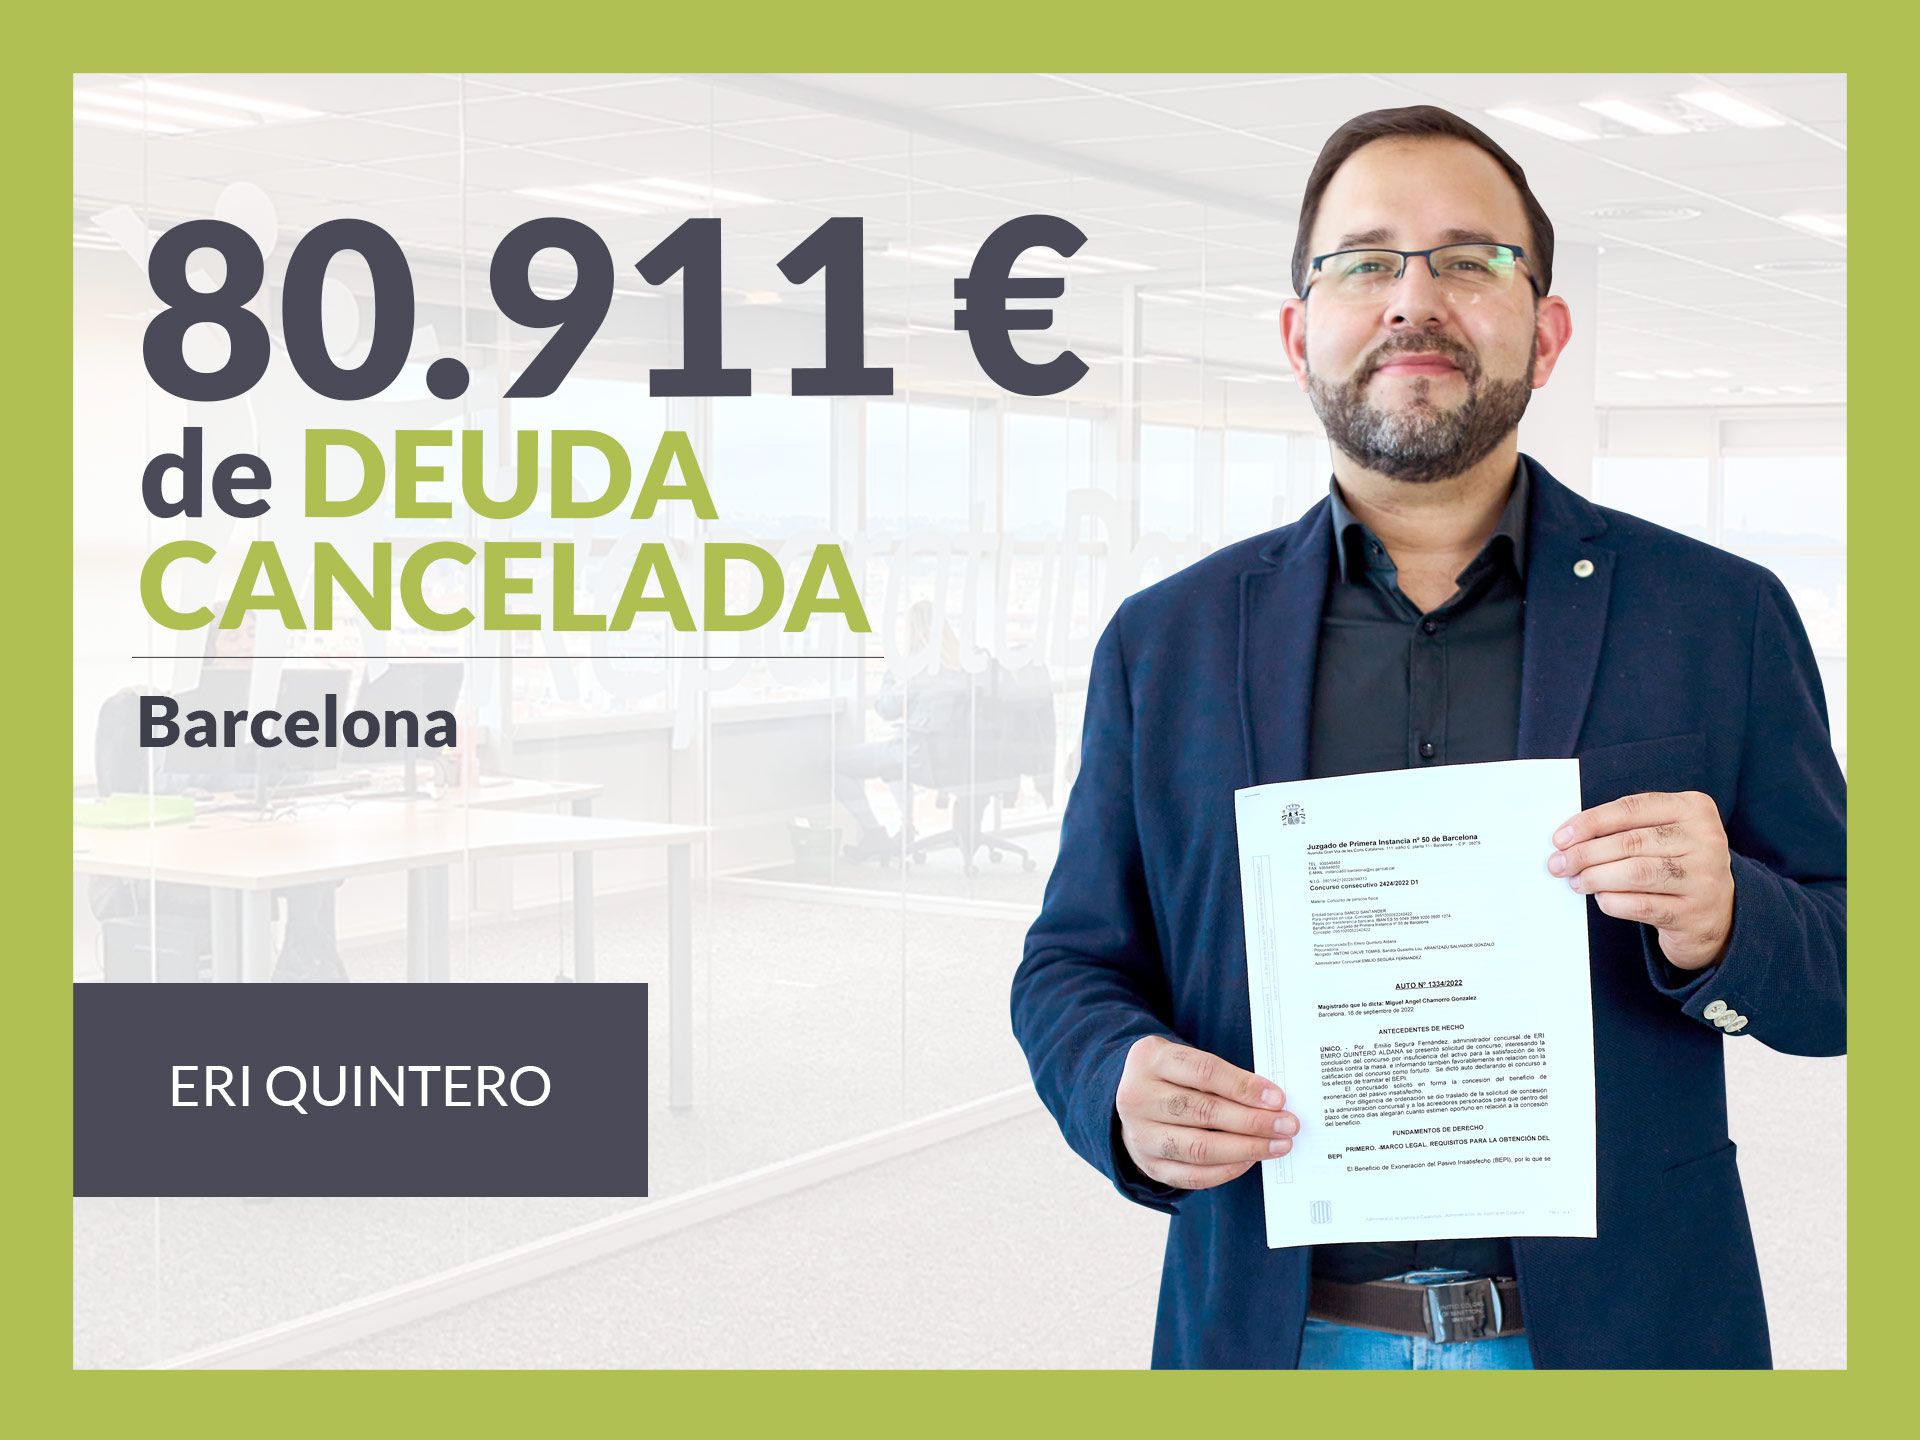 Repara tu Deuda Abogados cancela 80.911? en Barcelona (Catalunya) con la Ley de Segunda Oportunidad